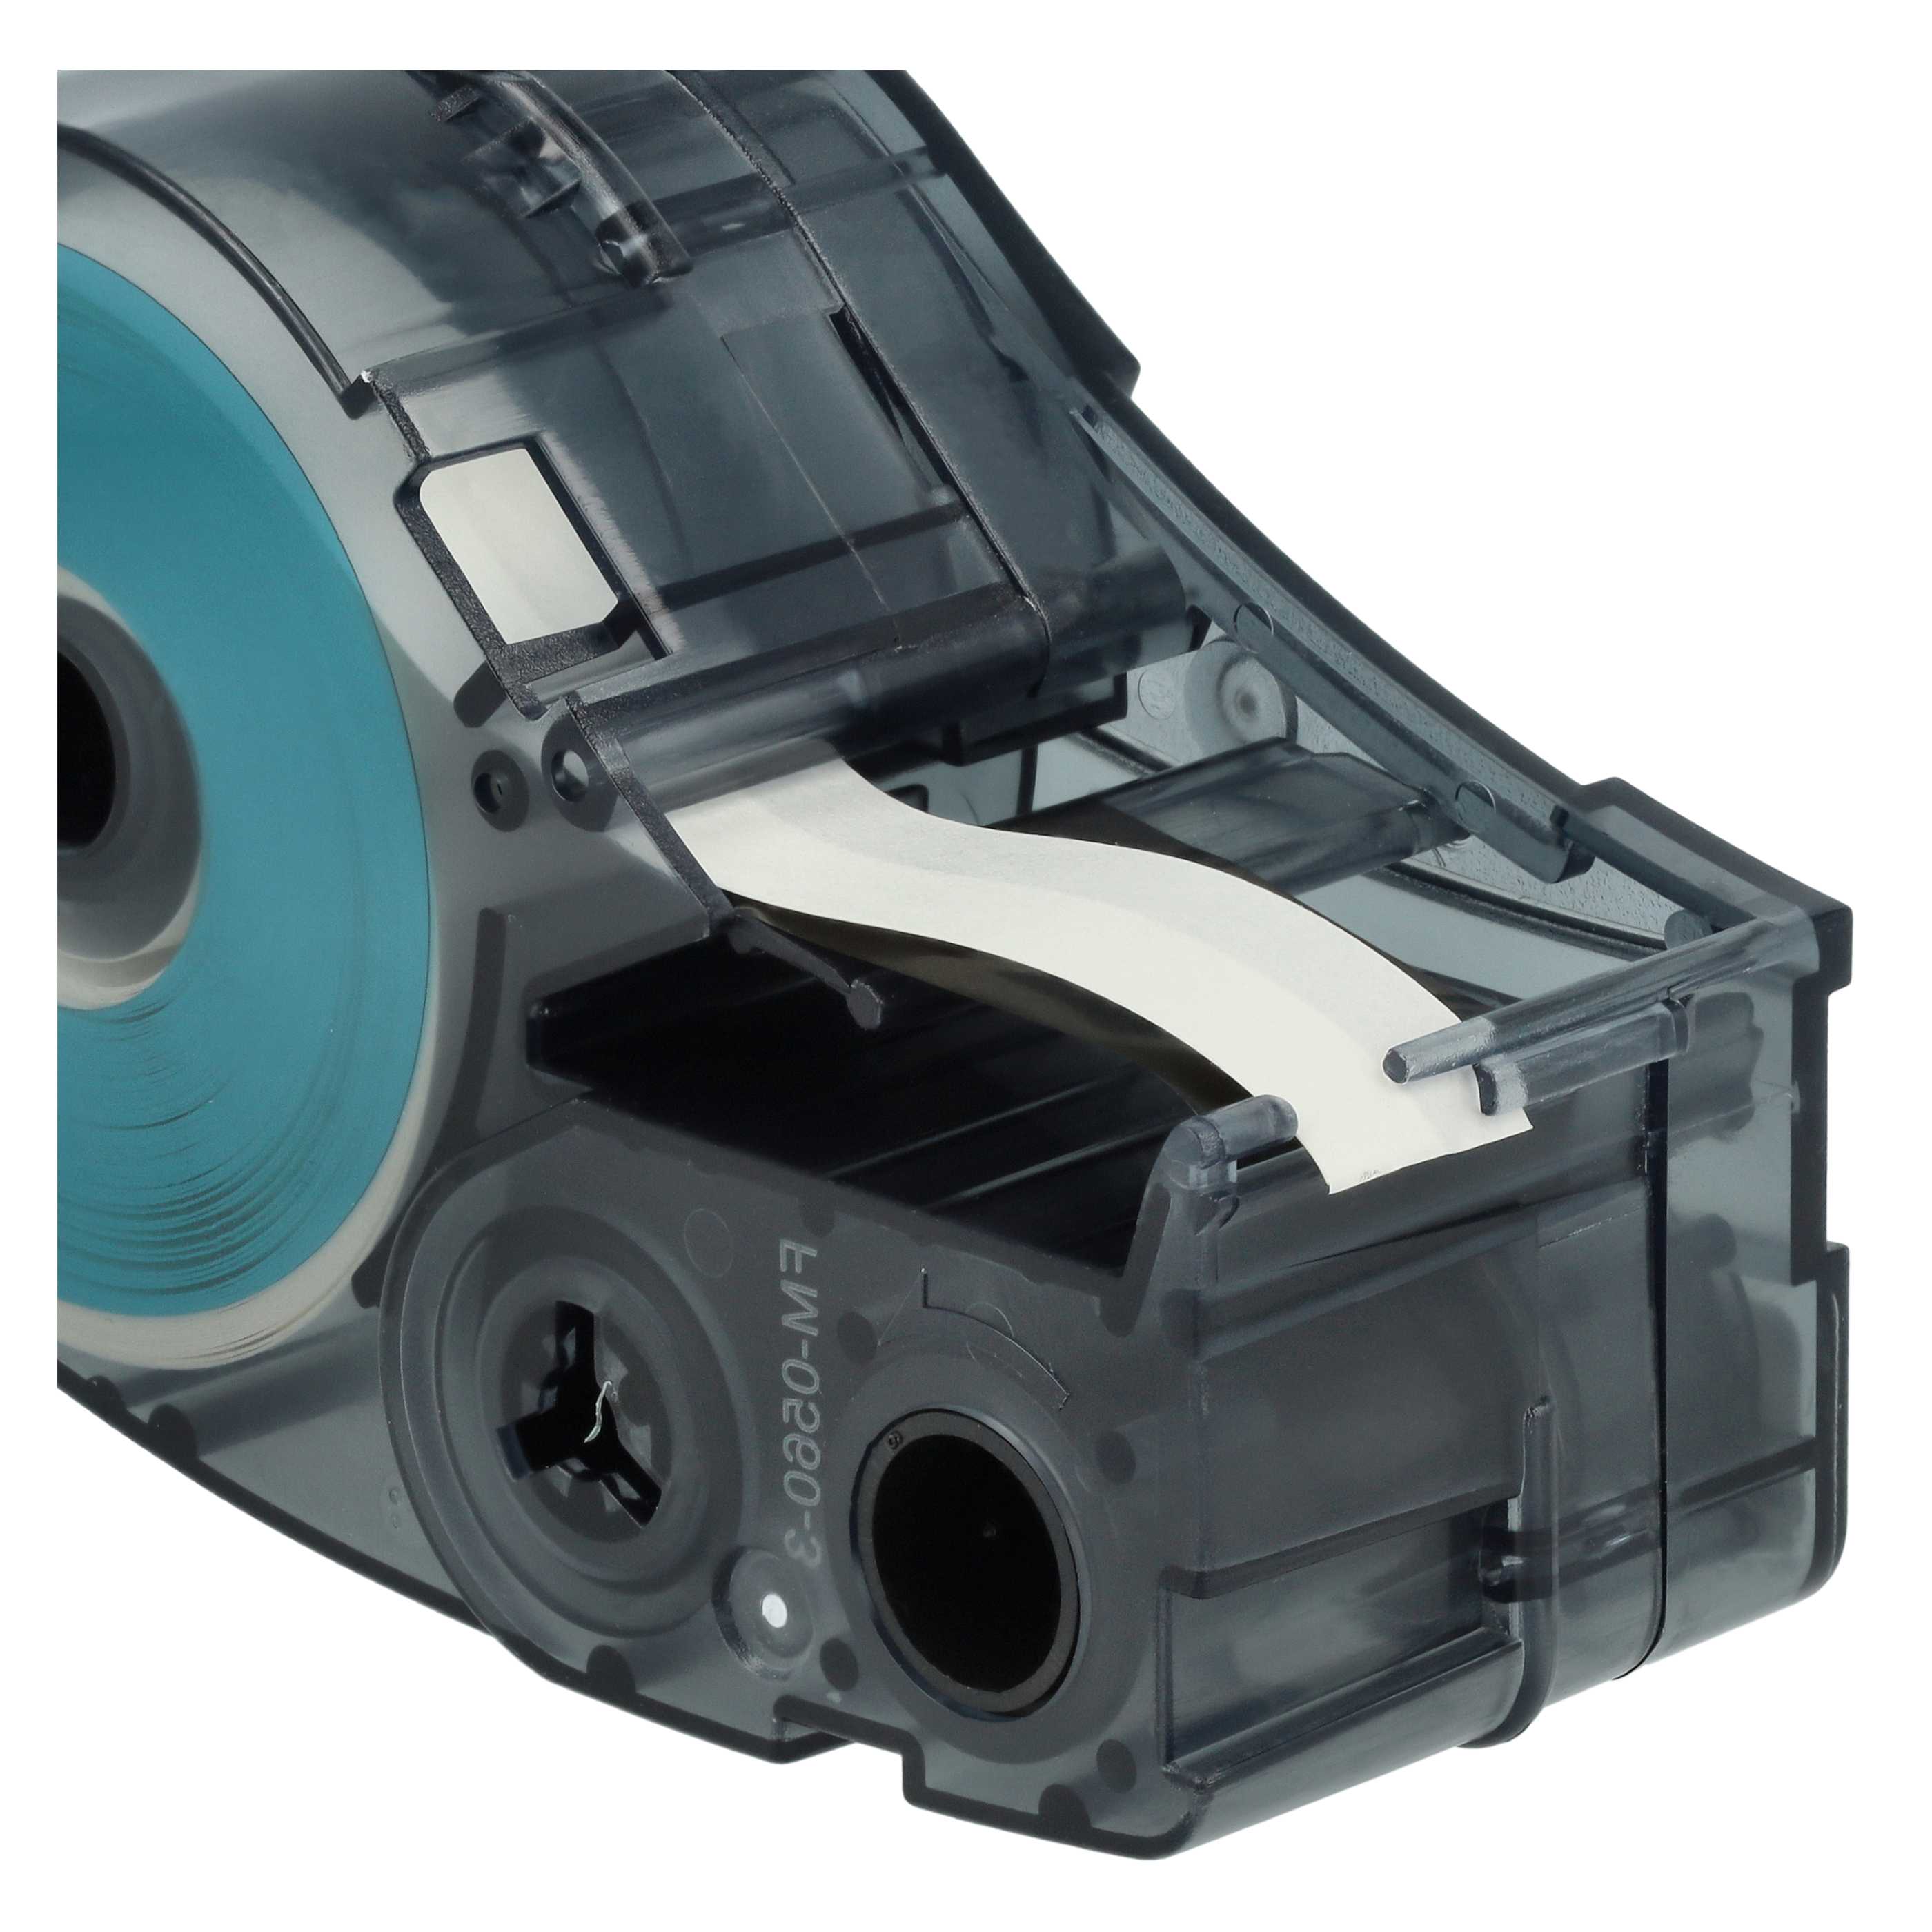 5x Cassetta nastro sostituisce Brady M21-250-423 per etichettatrice Brady 6,35mm nero su bianco, poliestere